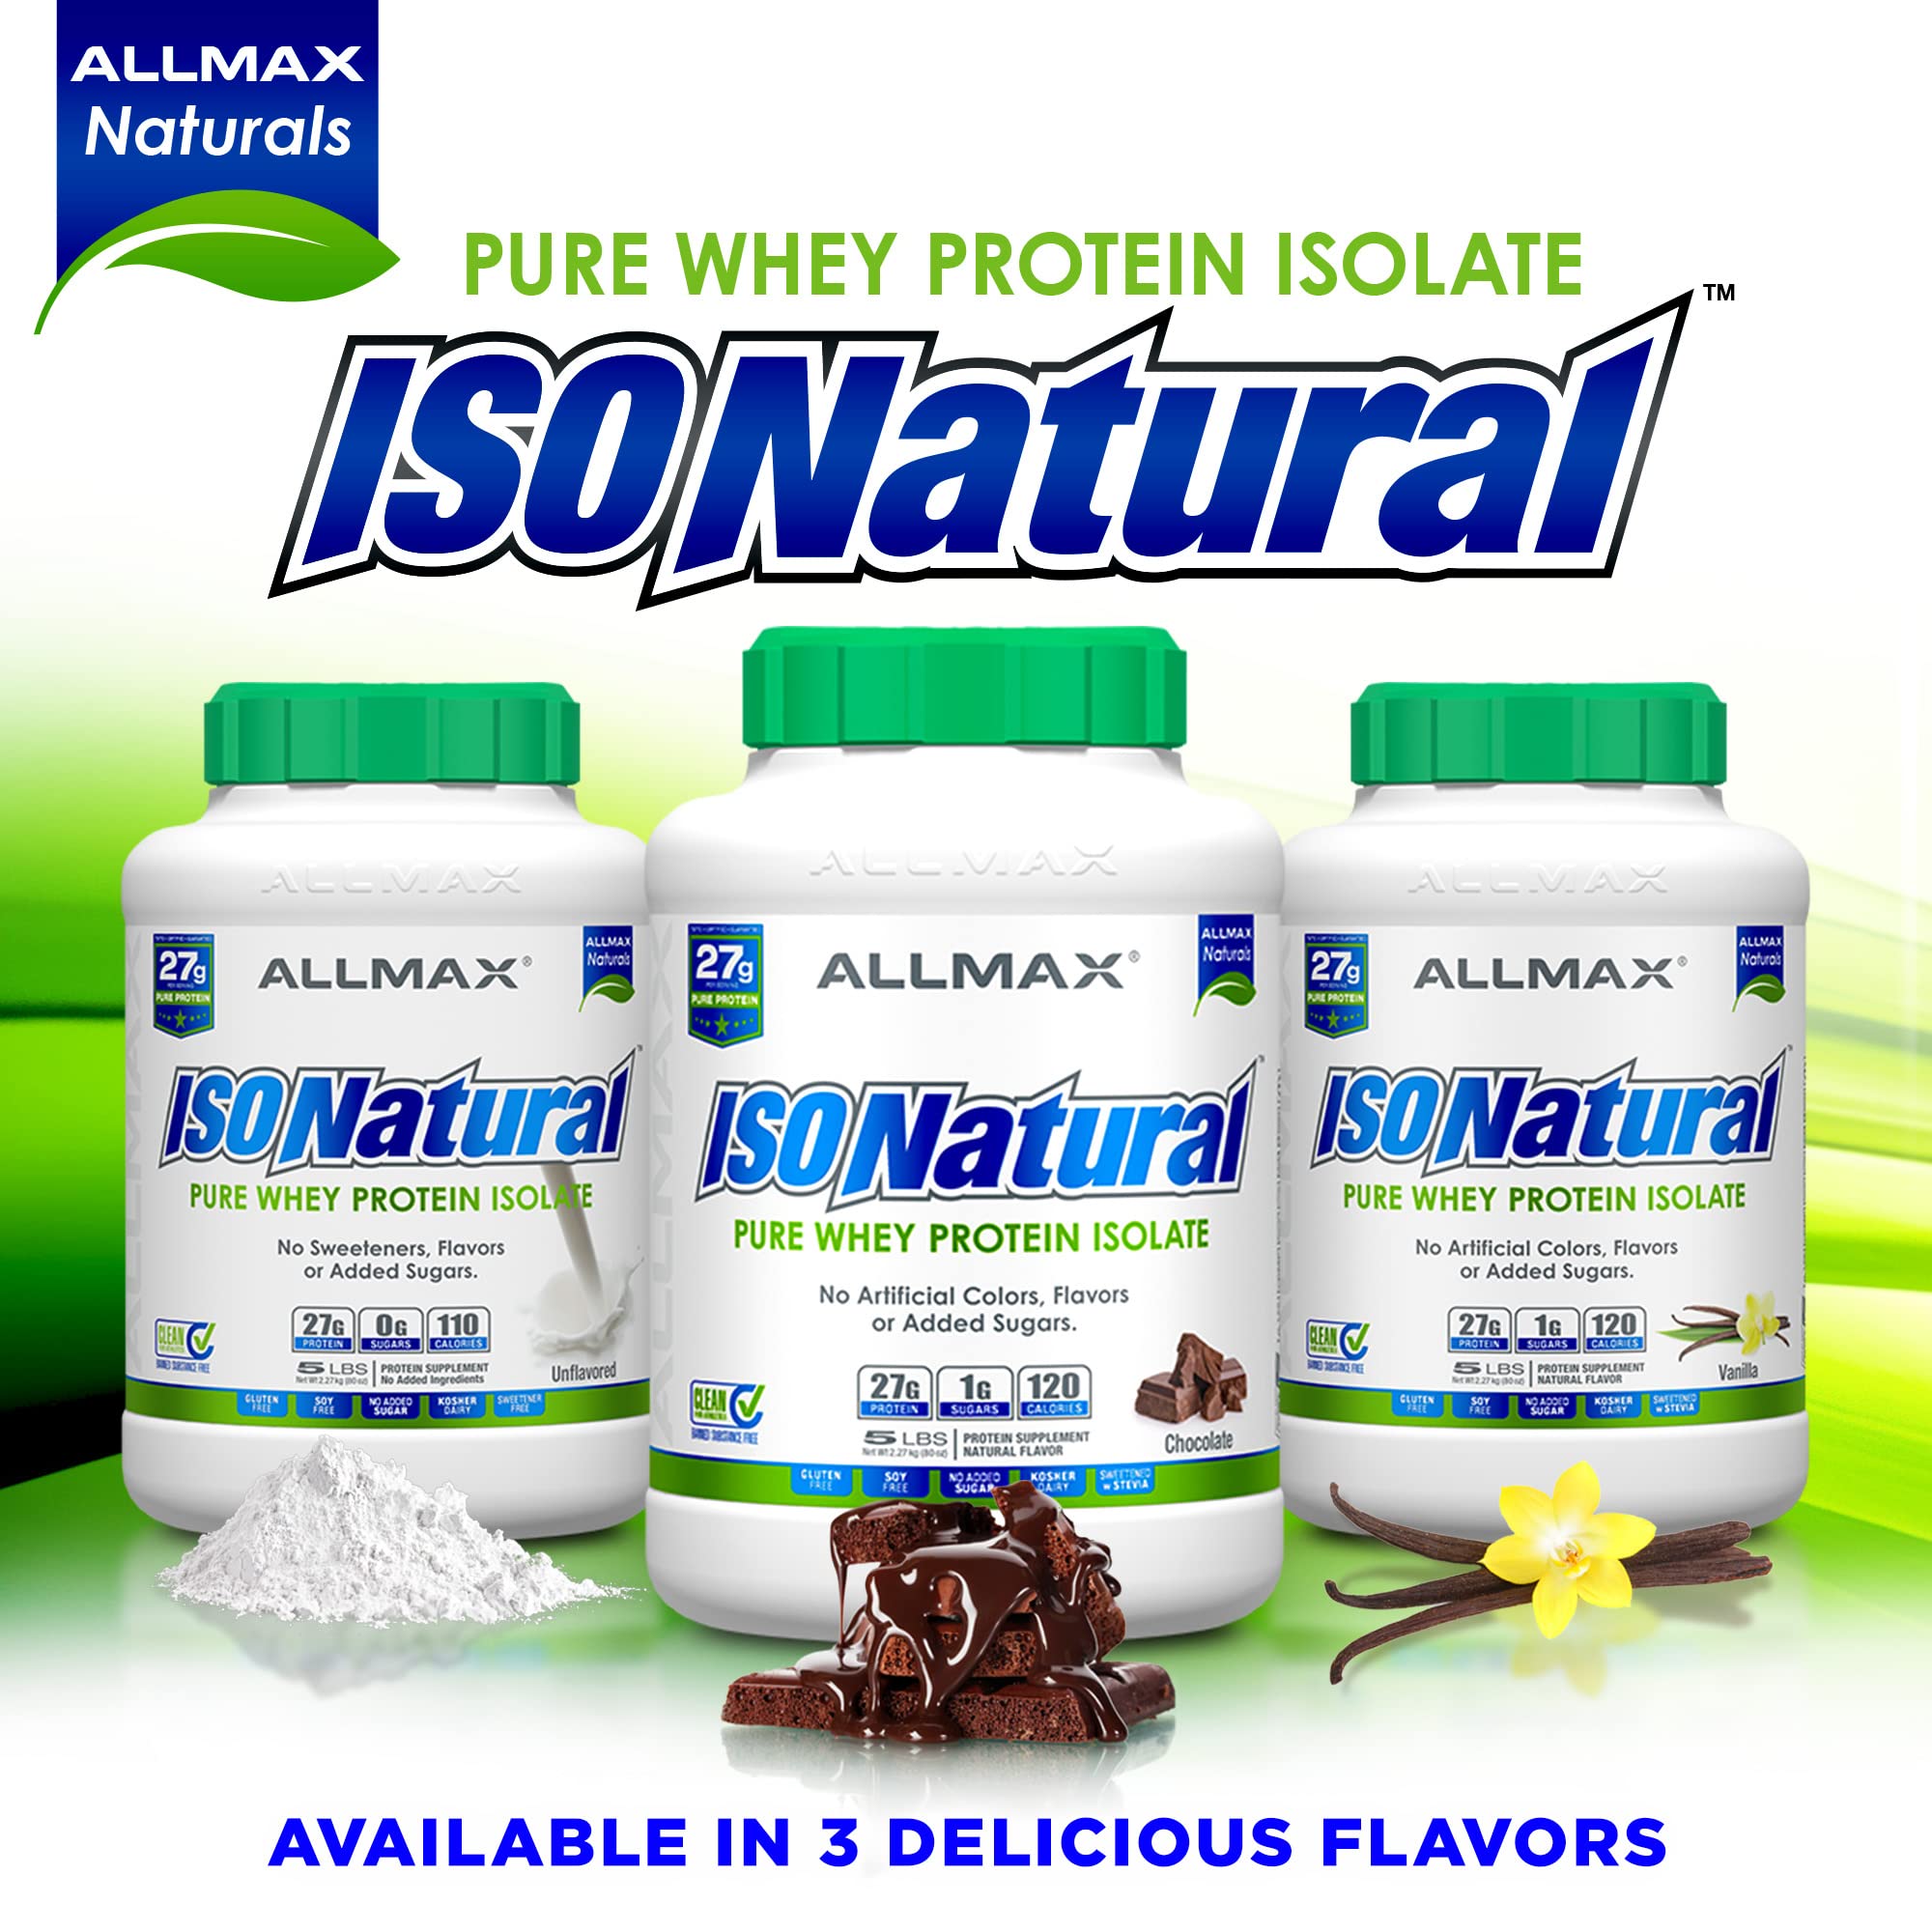 ALLMAX Nutrition ISONATURAL (Vanilla, 5 Pound)